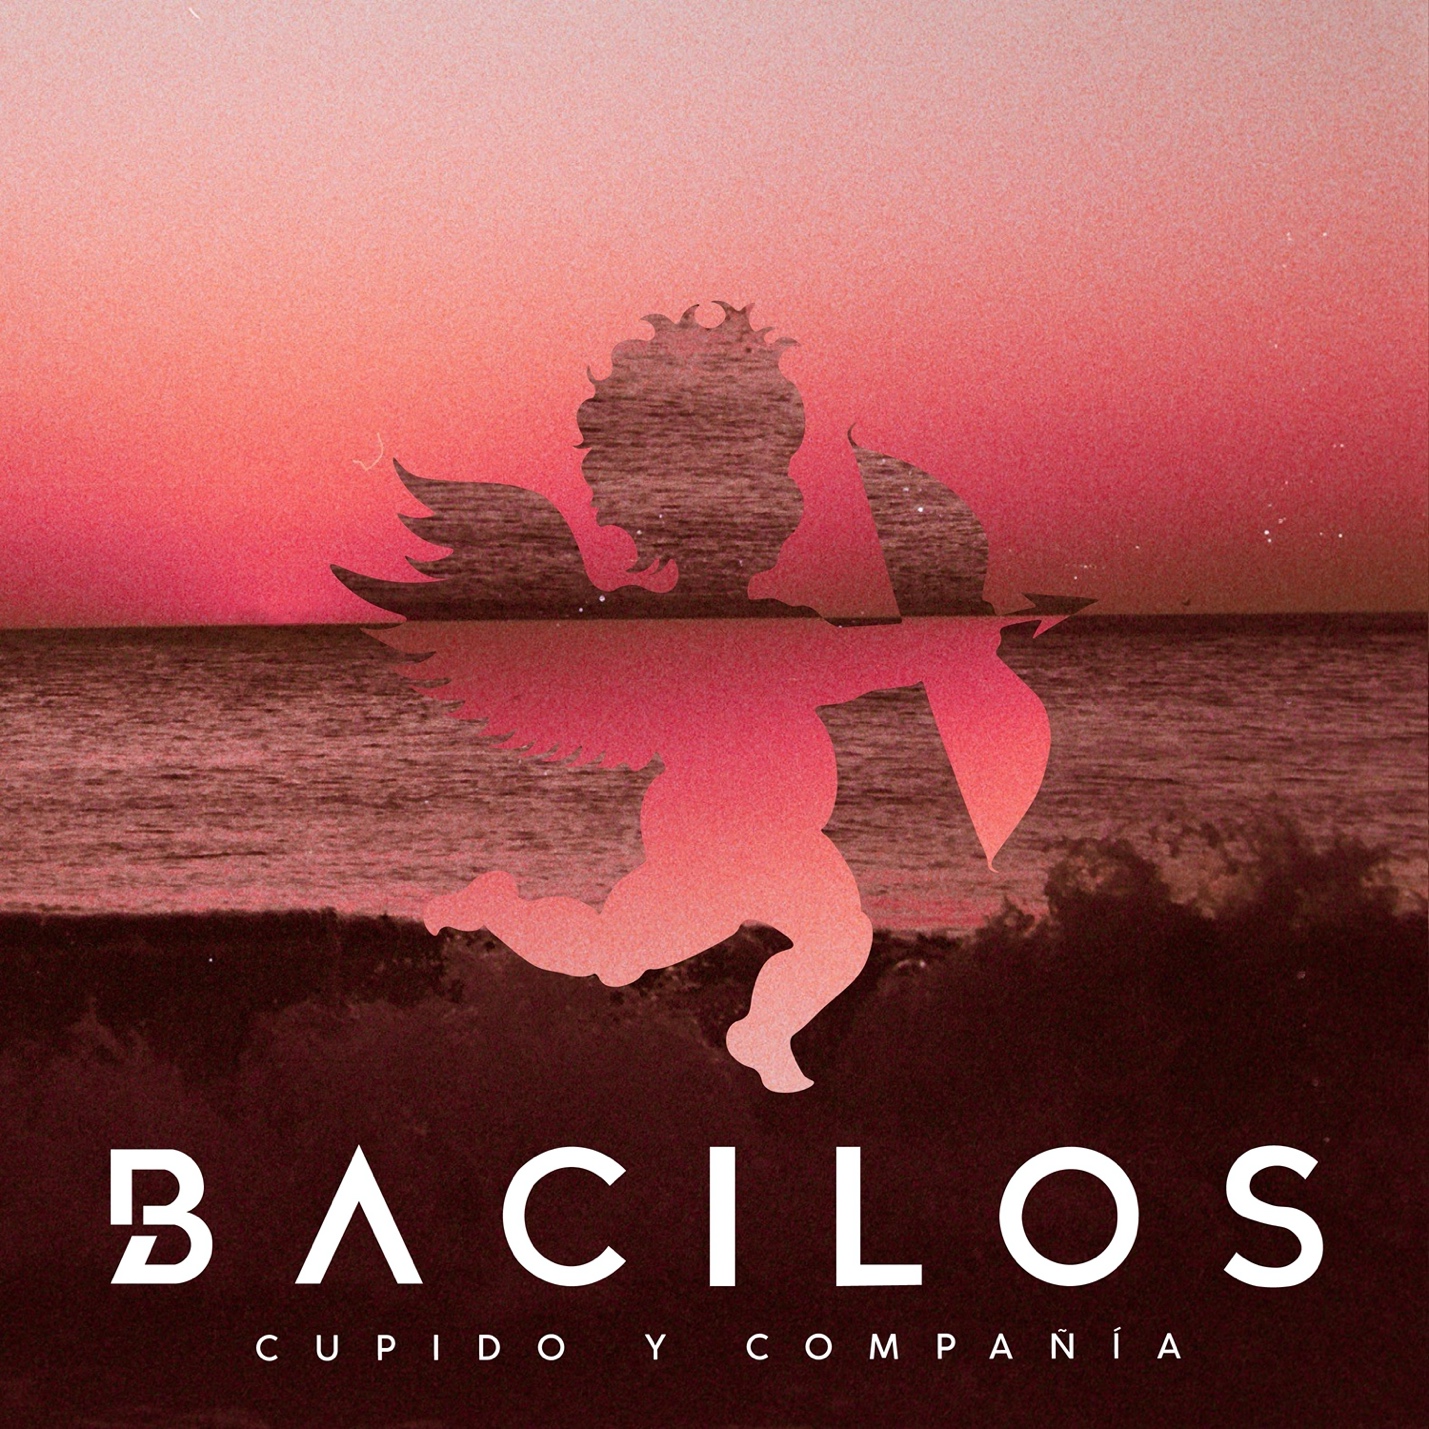 BACILOS ESTRENA NUEVO EP CUPIDO Y COMPAÑÍA Farras.live